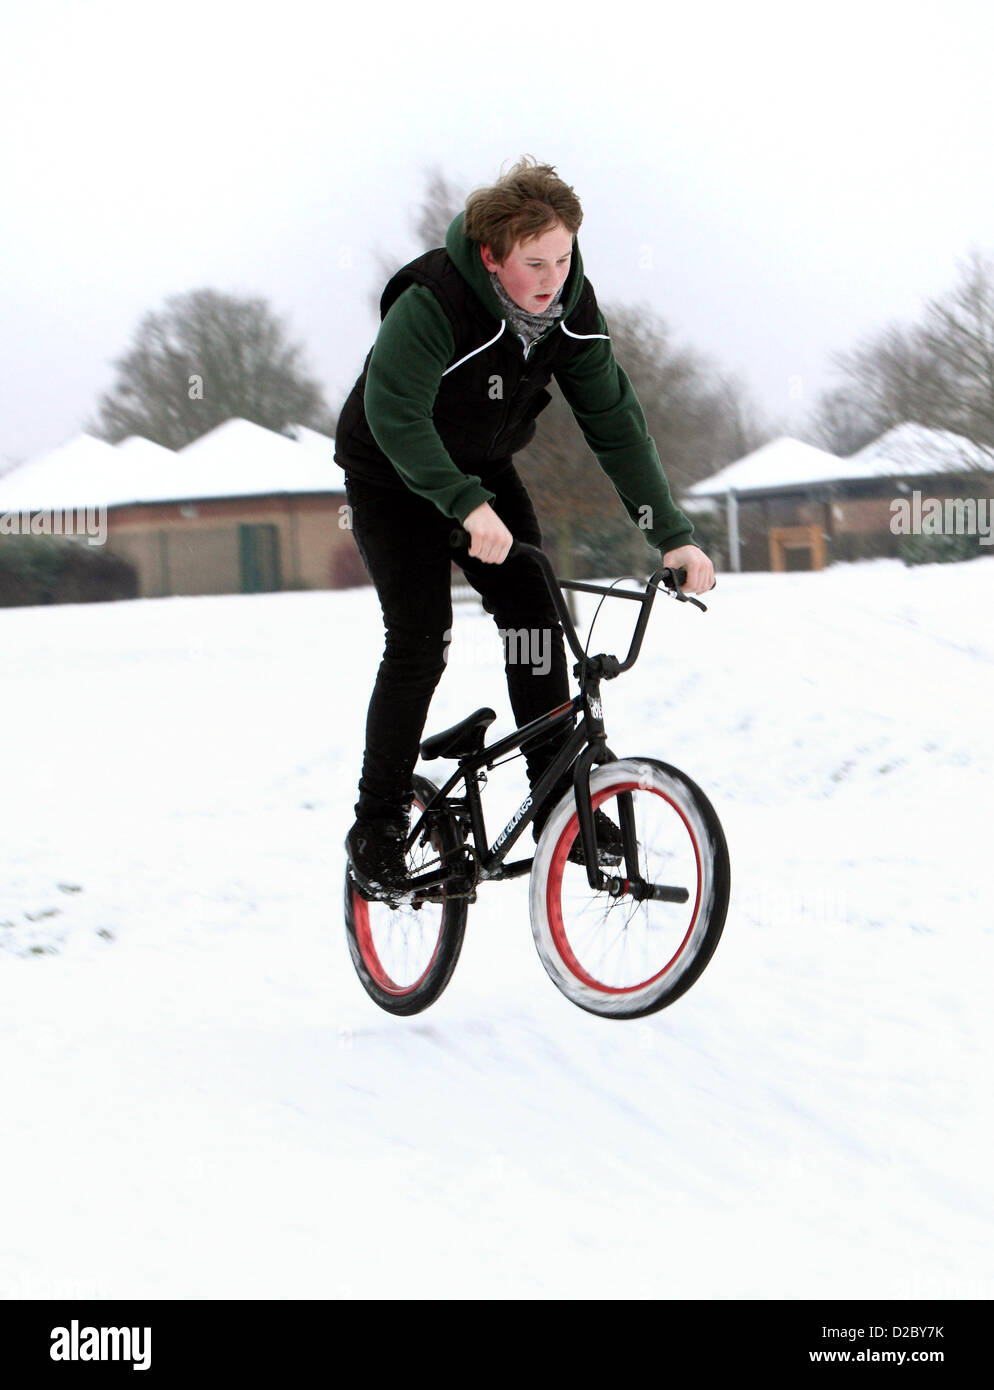 Bedford - Persone nella neve - Postlady, vogatori, Bambini, BMX bikers e a pochi cani, Bedford, Regno Unito - 19 gennaio 2013 Foto di Keith Mayhew Foto Stock